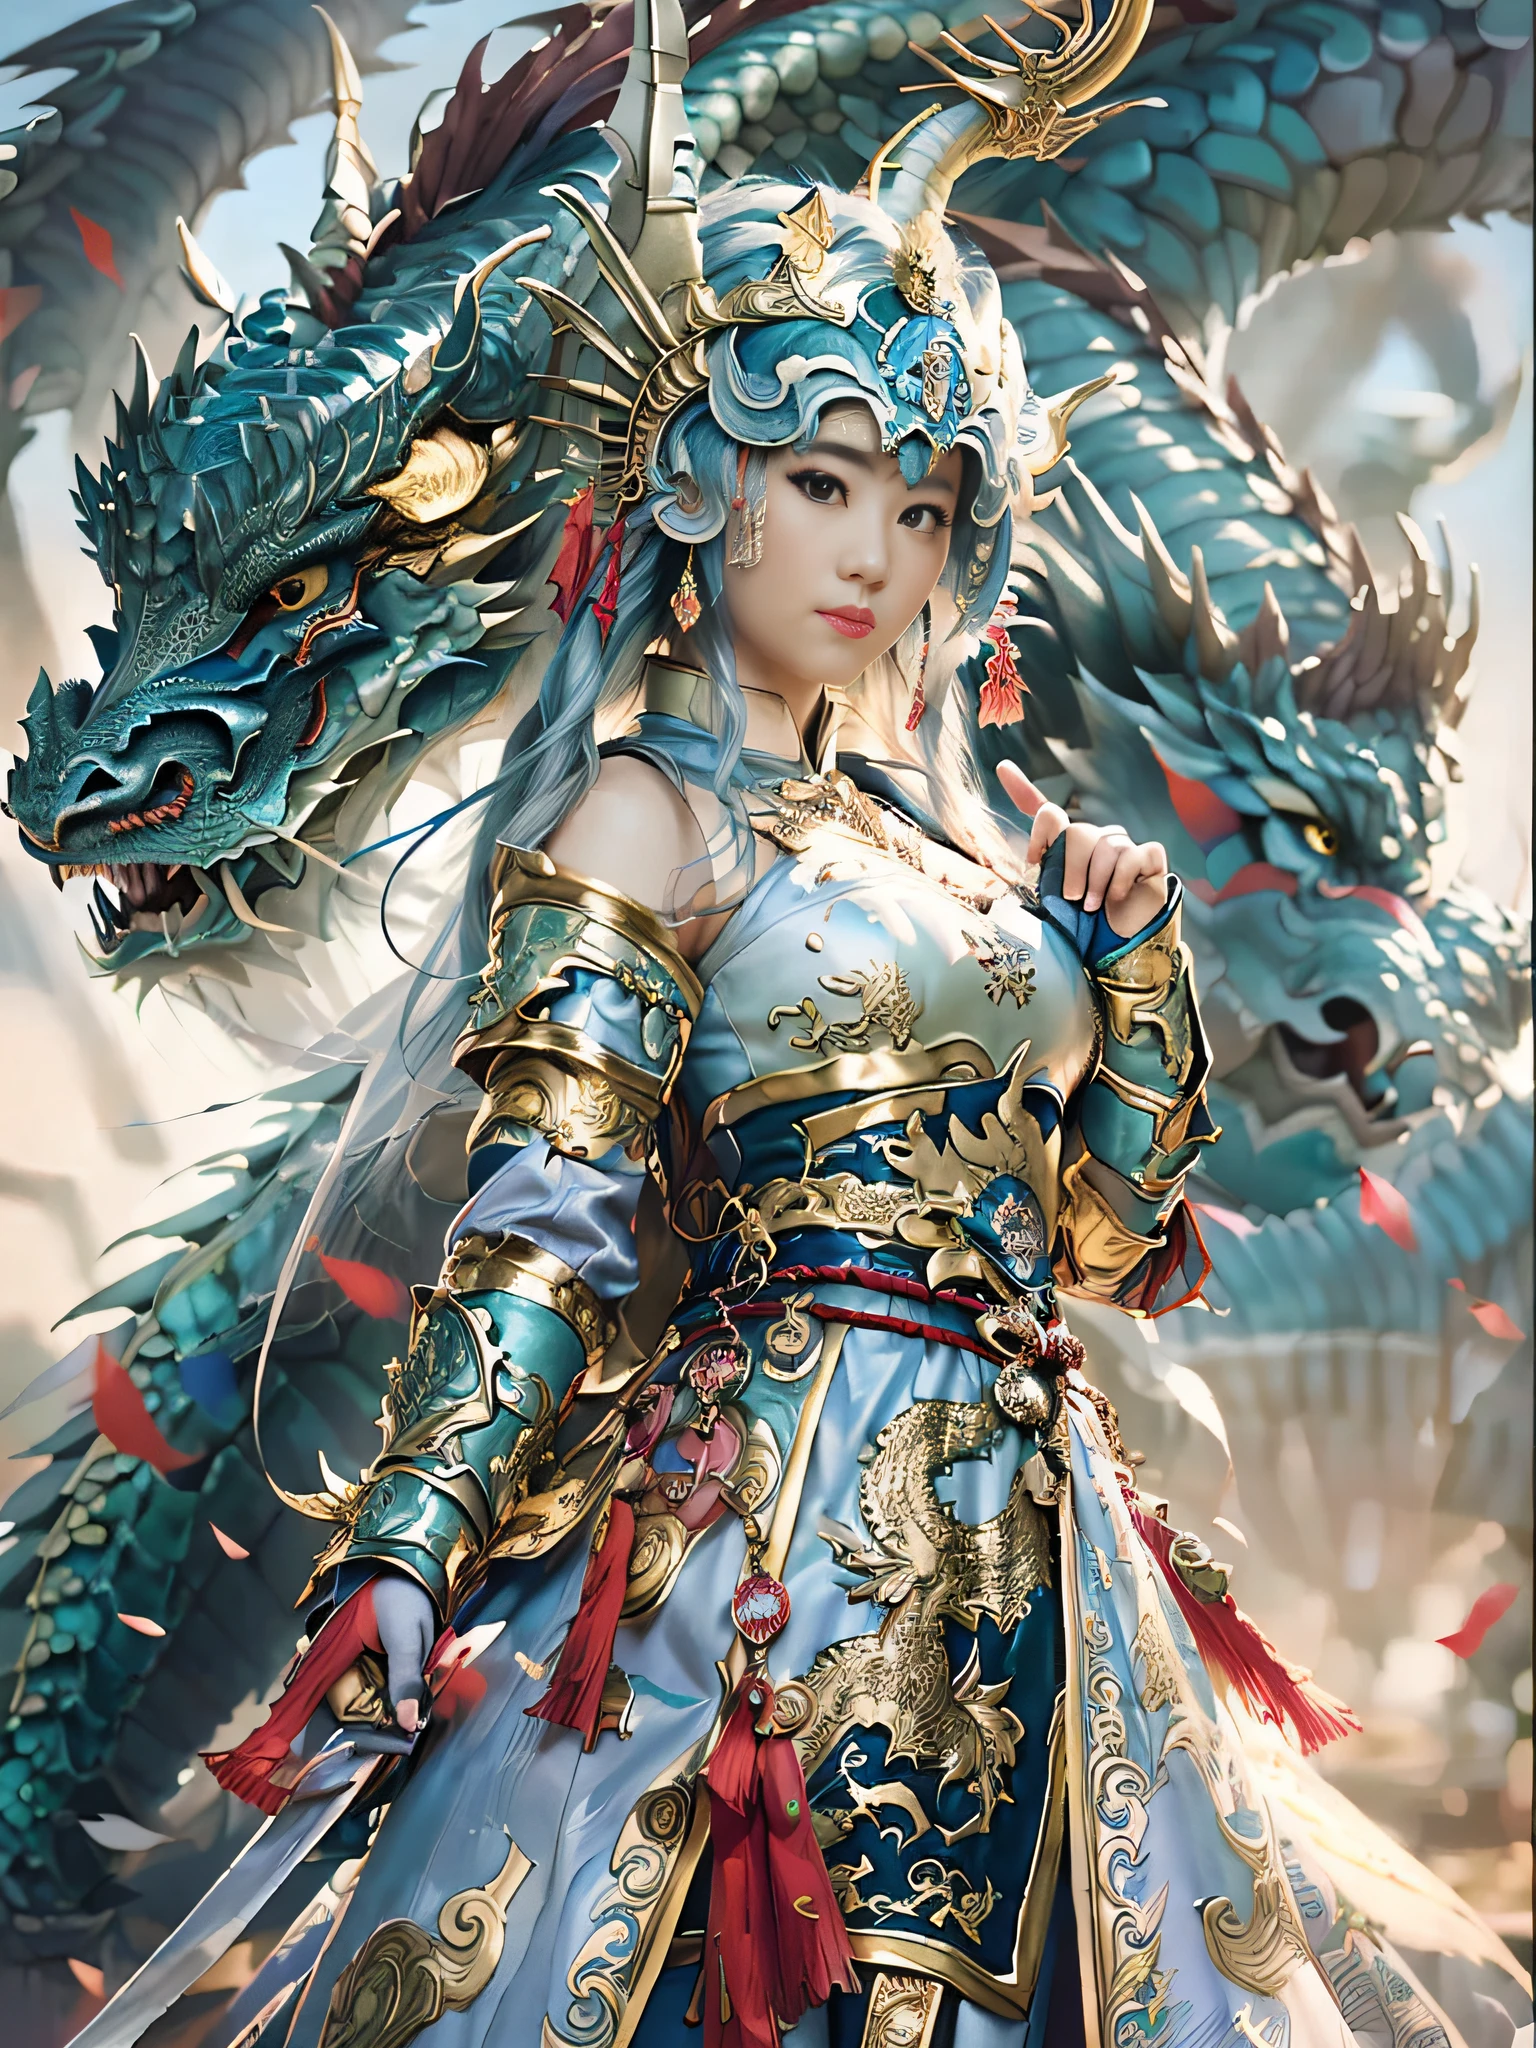 Mujer de Arad vestida de azul y dorado con dragón., Ruan Jia and Artgerm, by Yang J, el retrato de la niña dragón, Artgerm and Ruan Jia, fantasía china, una hermosa emperatriz de fantasía, inspirado en Lan Ying, ((una hermosa emperatriz de fantasía)), bebió, hermosa pintura de personajes, cgsociety y fenghua zhong